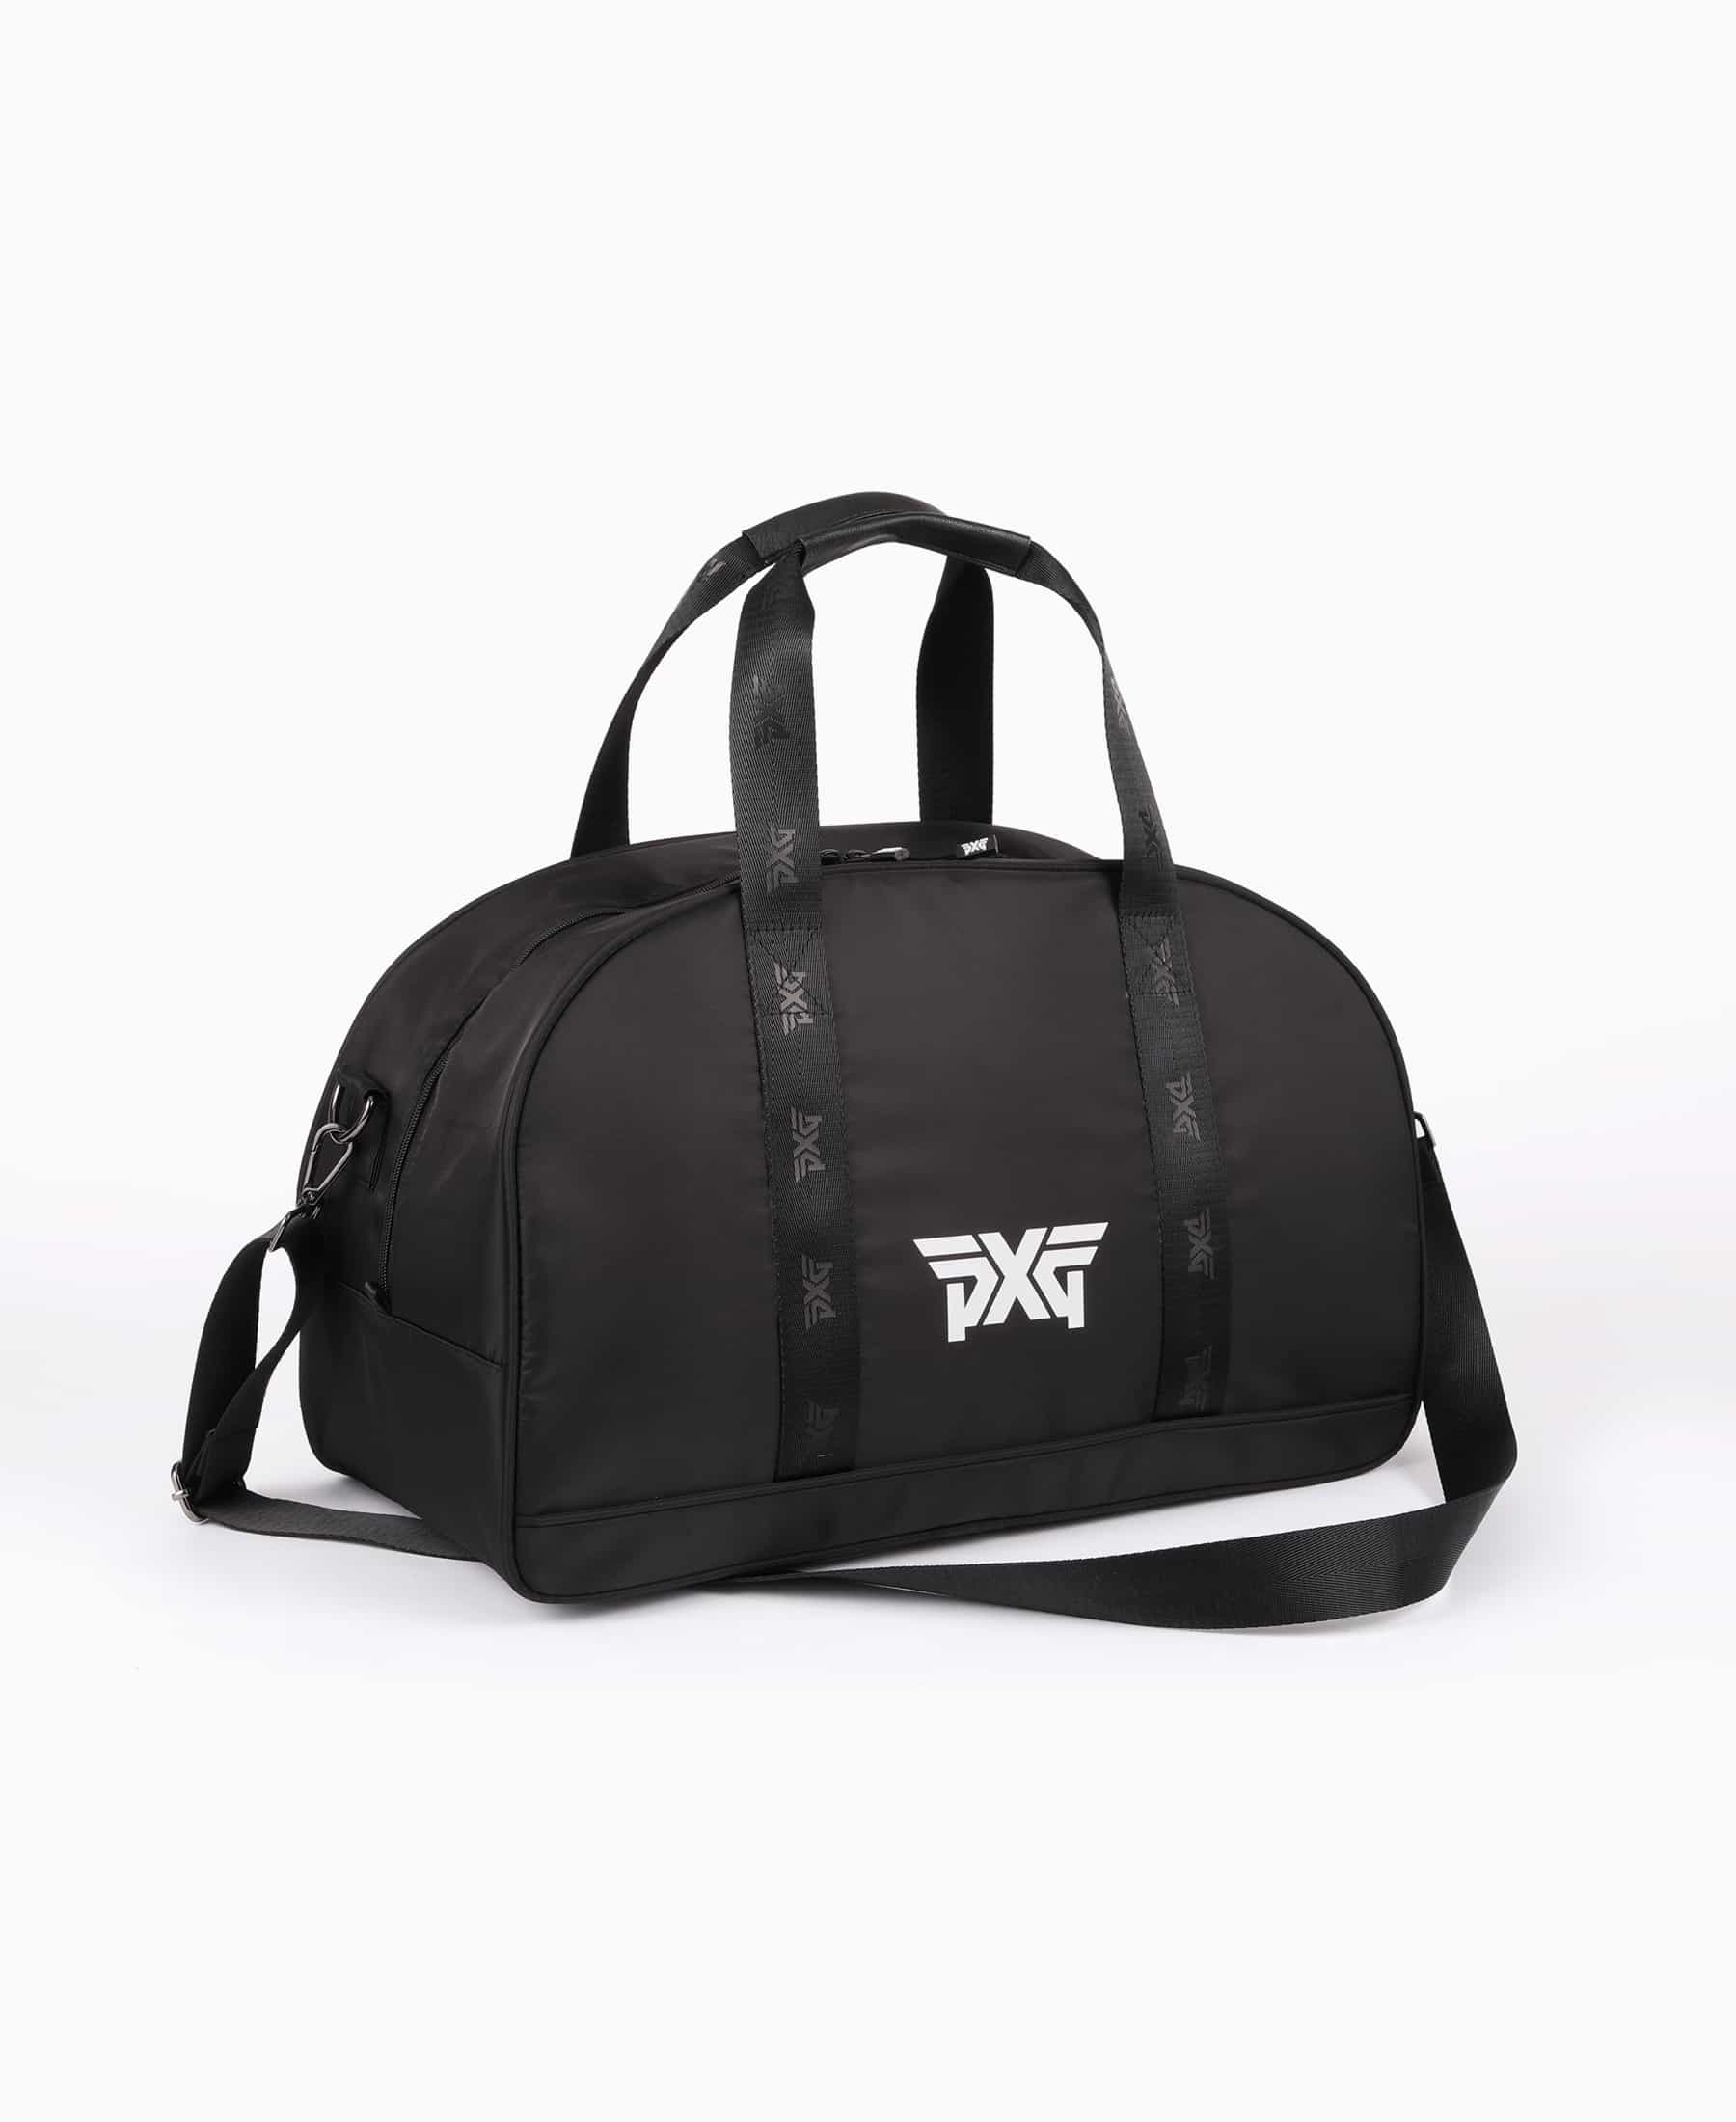 PXG リュックサック ゴルフ ボストンバッグ メンズ ブラック新品タグ付き正規品